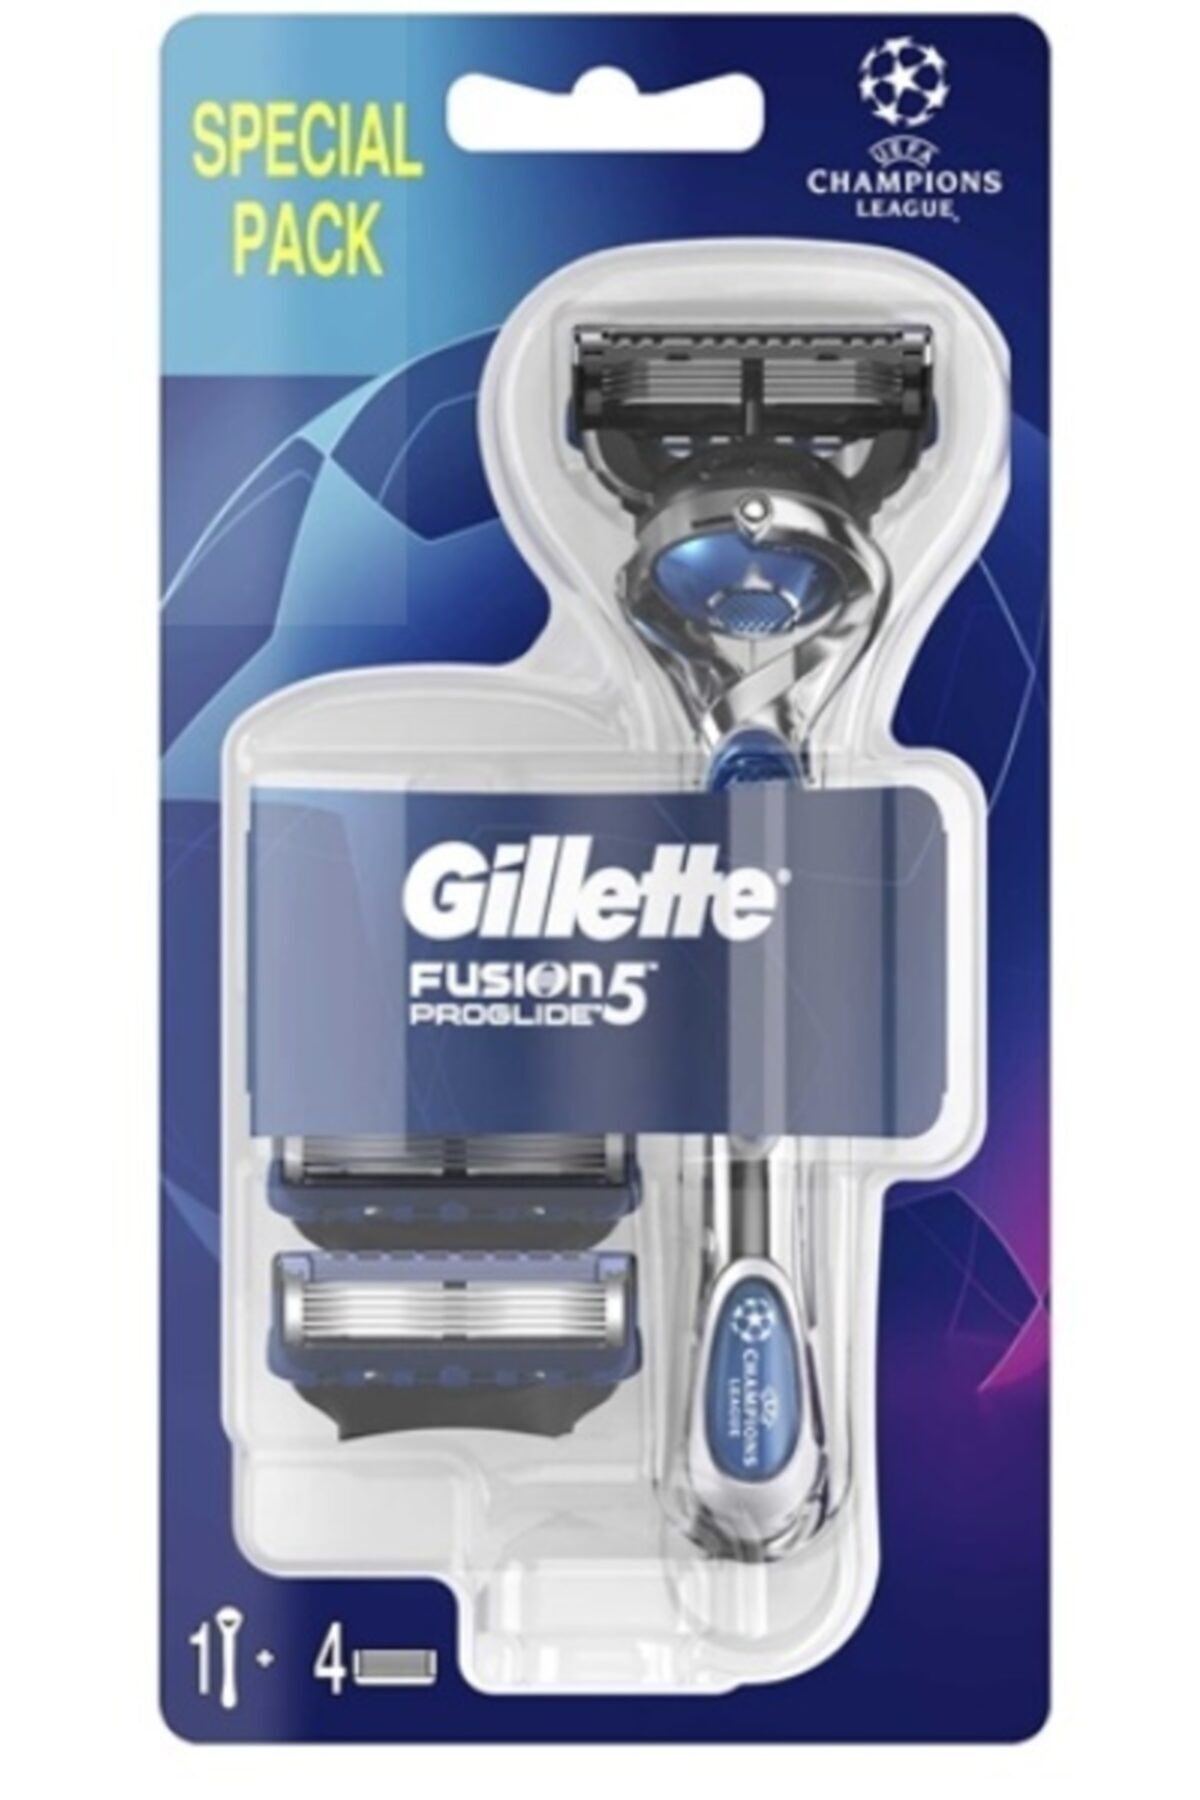 Gillette Fusion 5 Proglide Tıraş Makinesi + 4 Yedek Bıçak Şampiyonlar Ligi Paketi SE10246